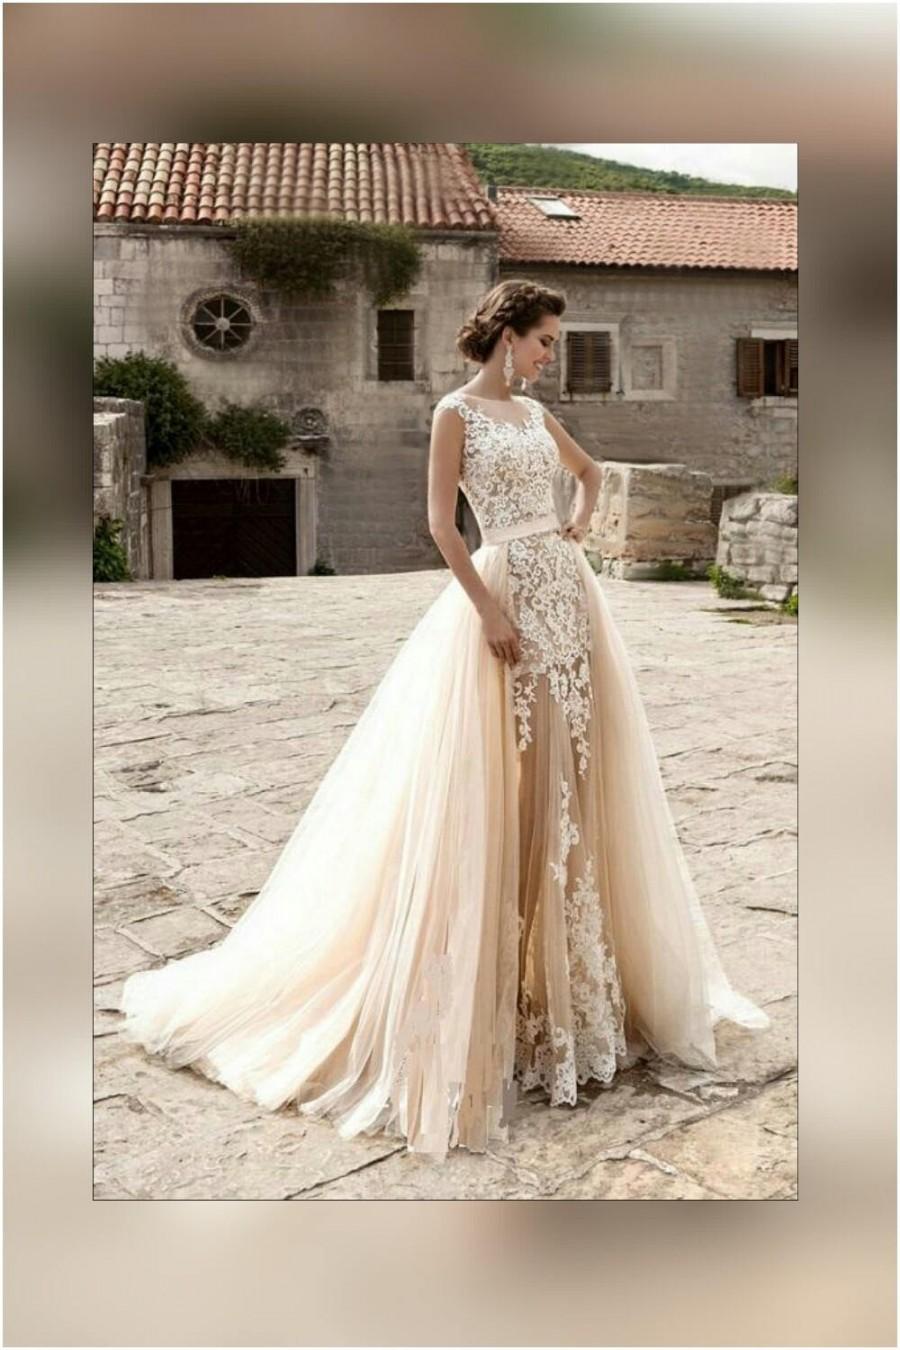 زفاف - Wedding dress light Peach Echo and white colors with detachable train, tulle bridal removable skirt with train